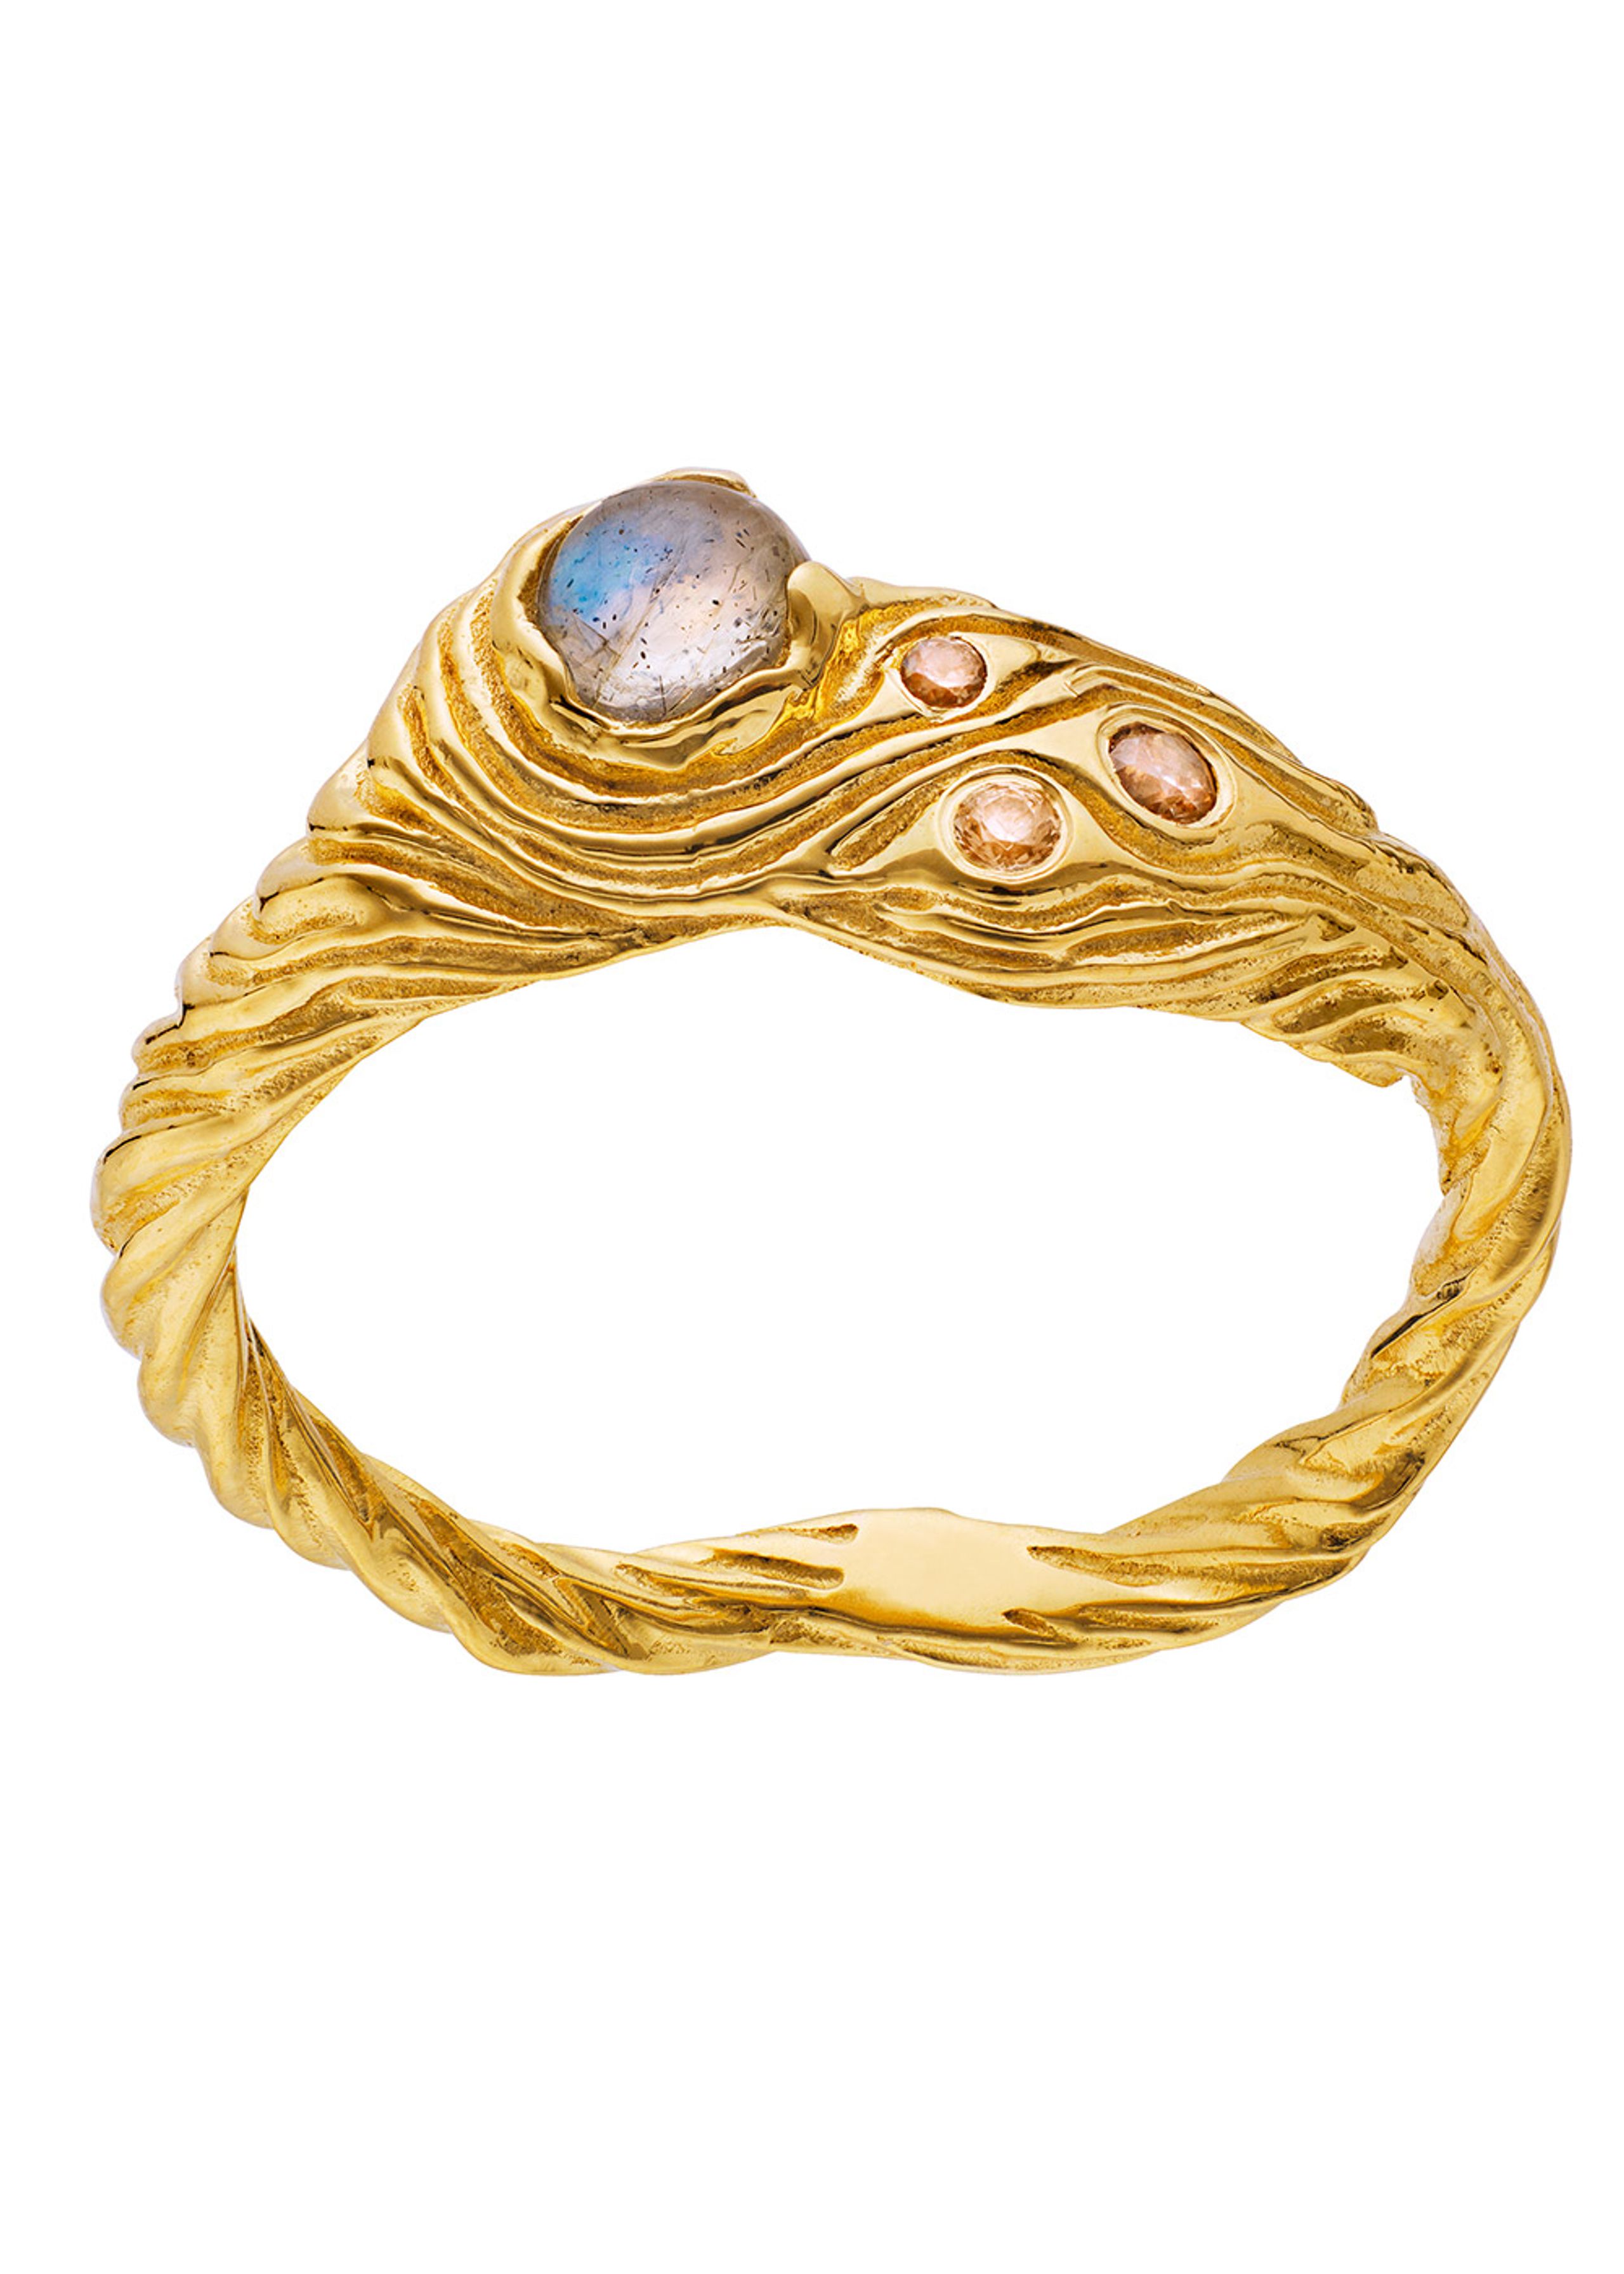 Maanesten - Ring - Oceana Ring - Gold